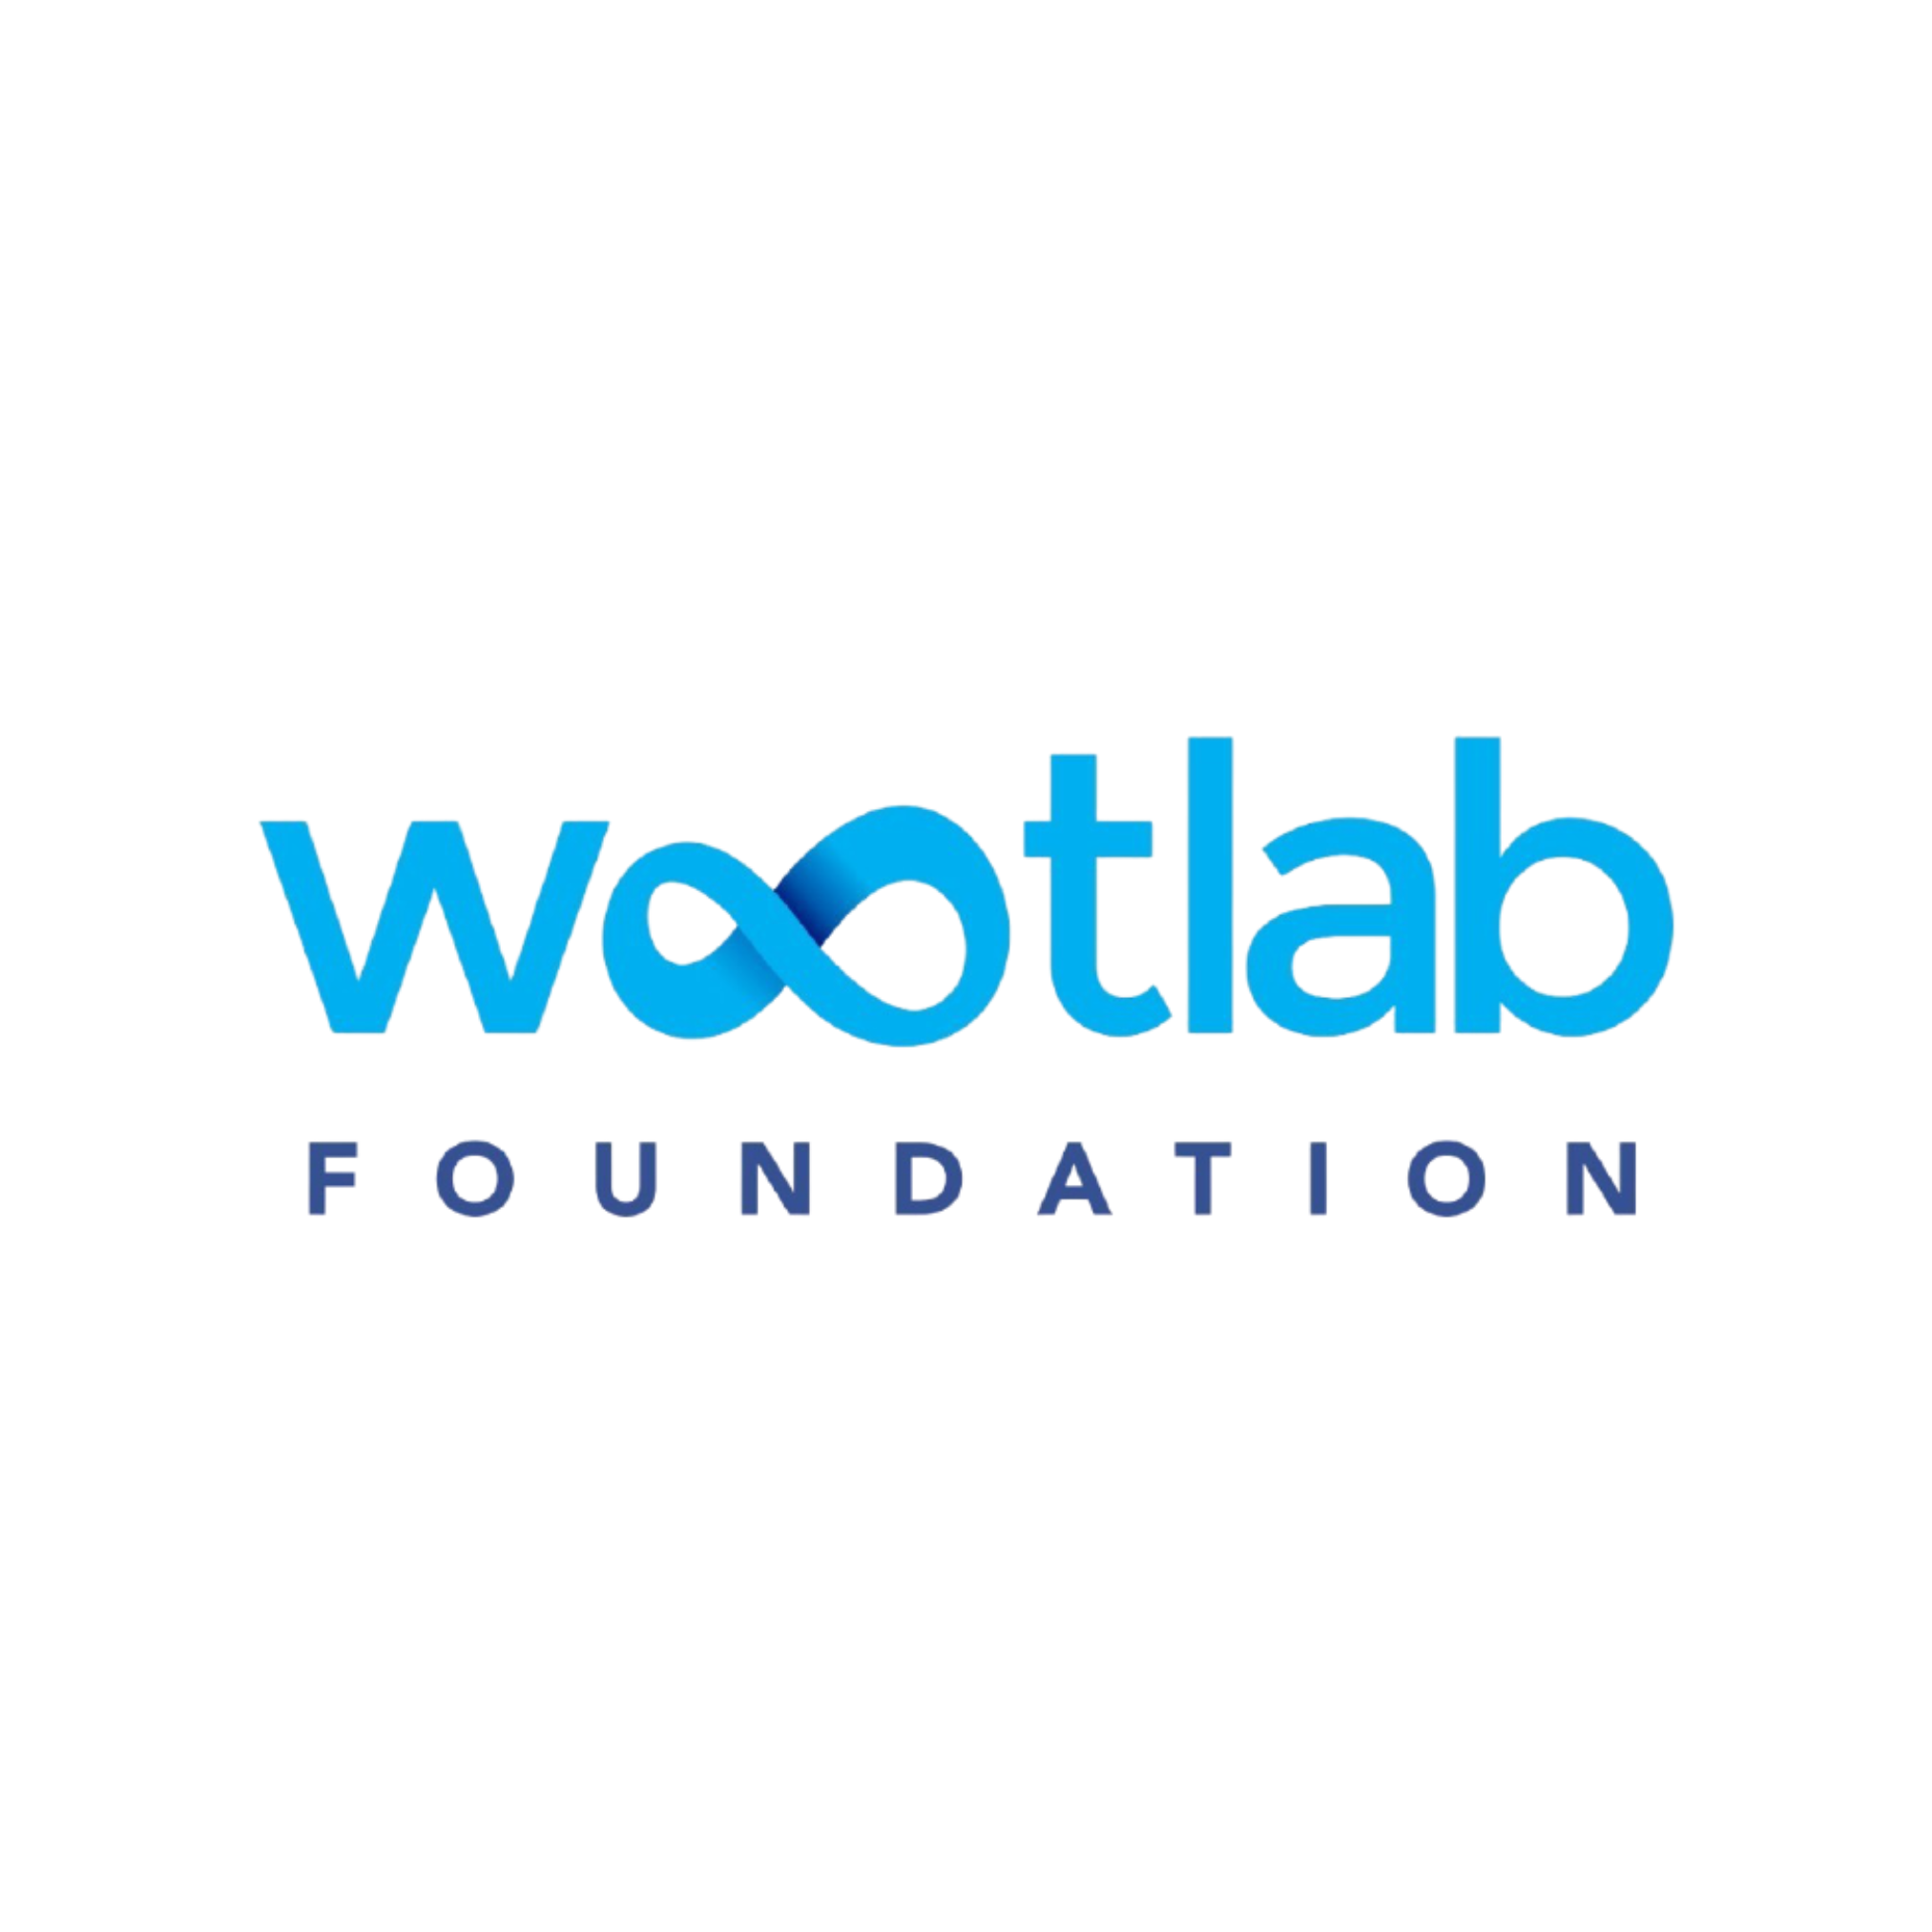 Wootlab foundation logo